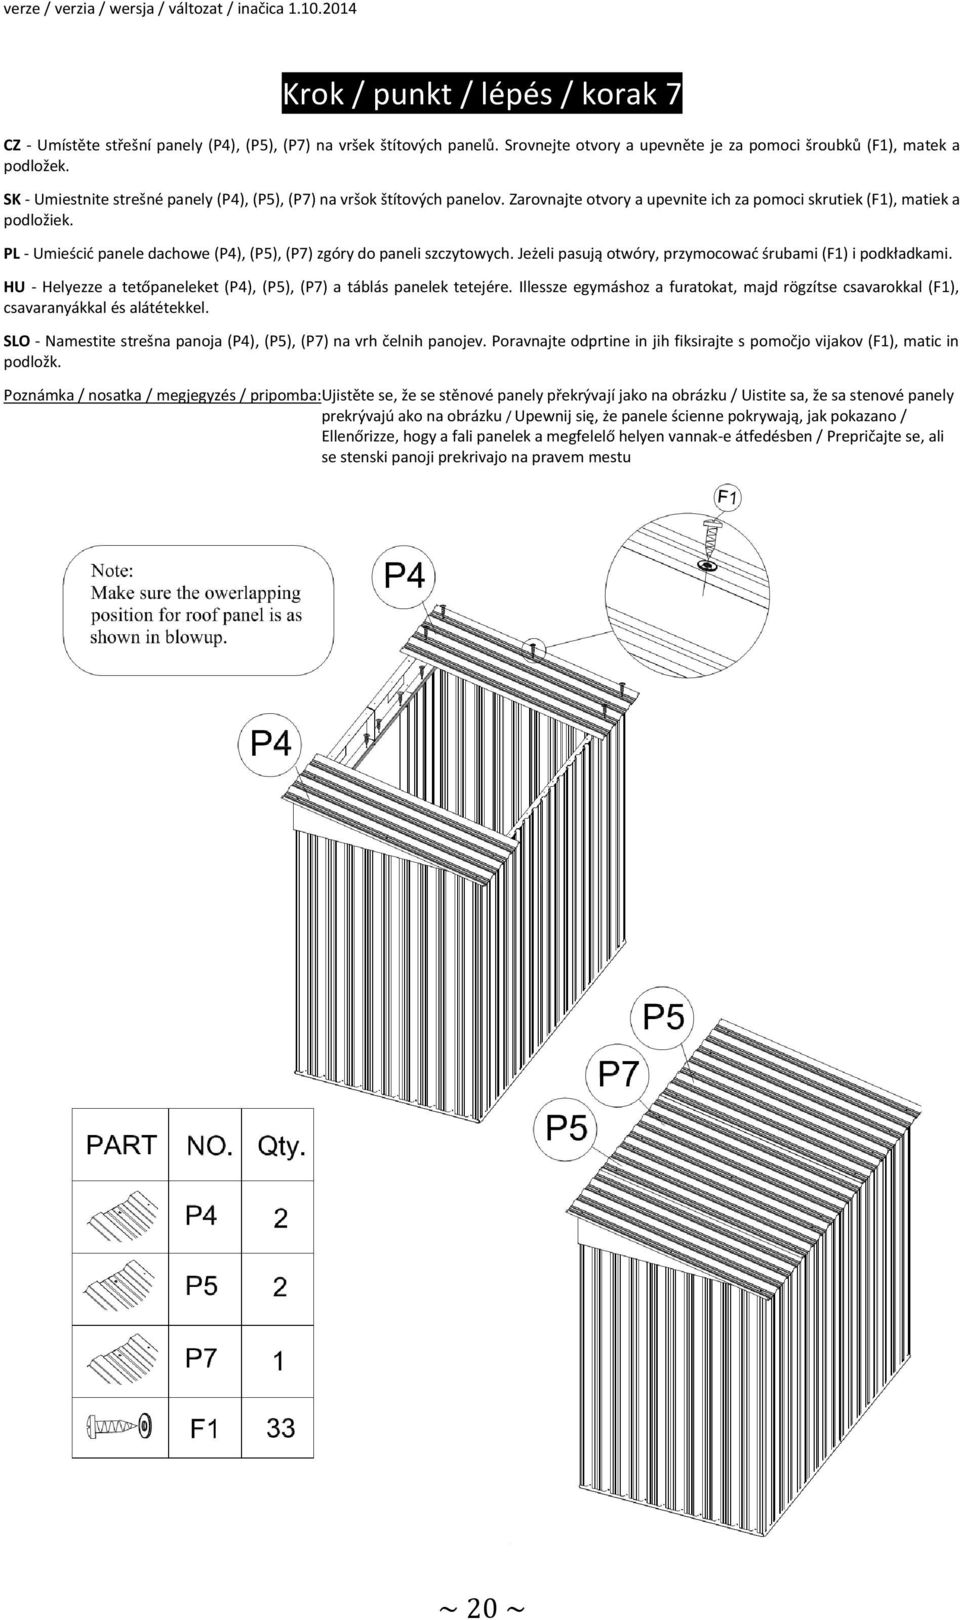 PL - Umieścić panele dachowe (P4), (P5), (P7) zgóry do paneli szczytowych. Jeżeli pasują otwóry, przymocować śrubami (F1) i podkładkami.